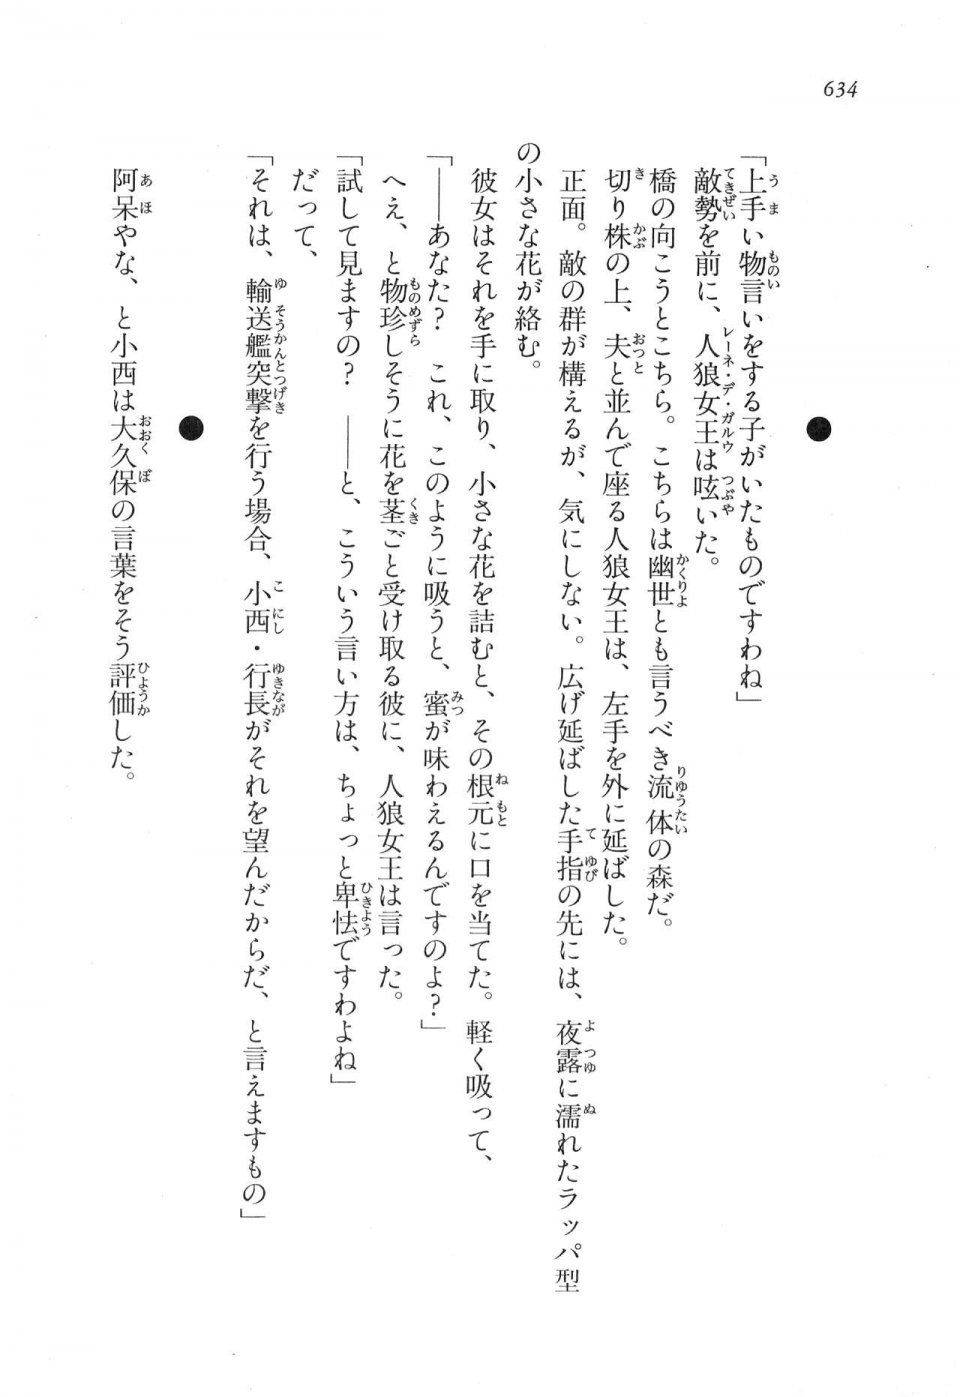 Kyoukai Senjou no Horizon LN Vol 17(7B) - Photo #636